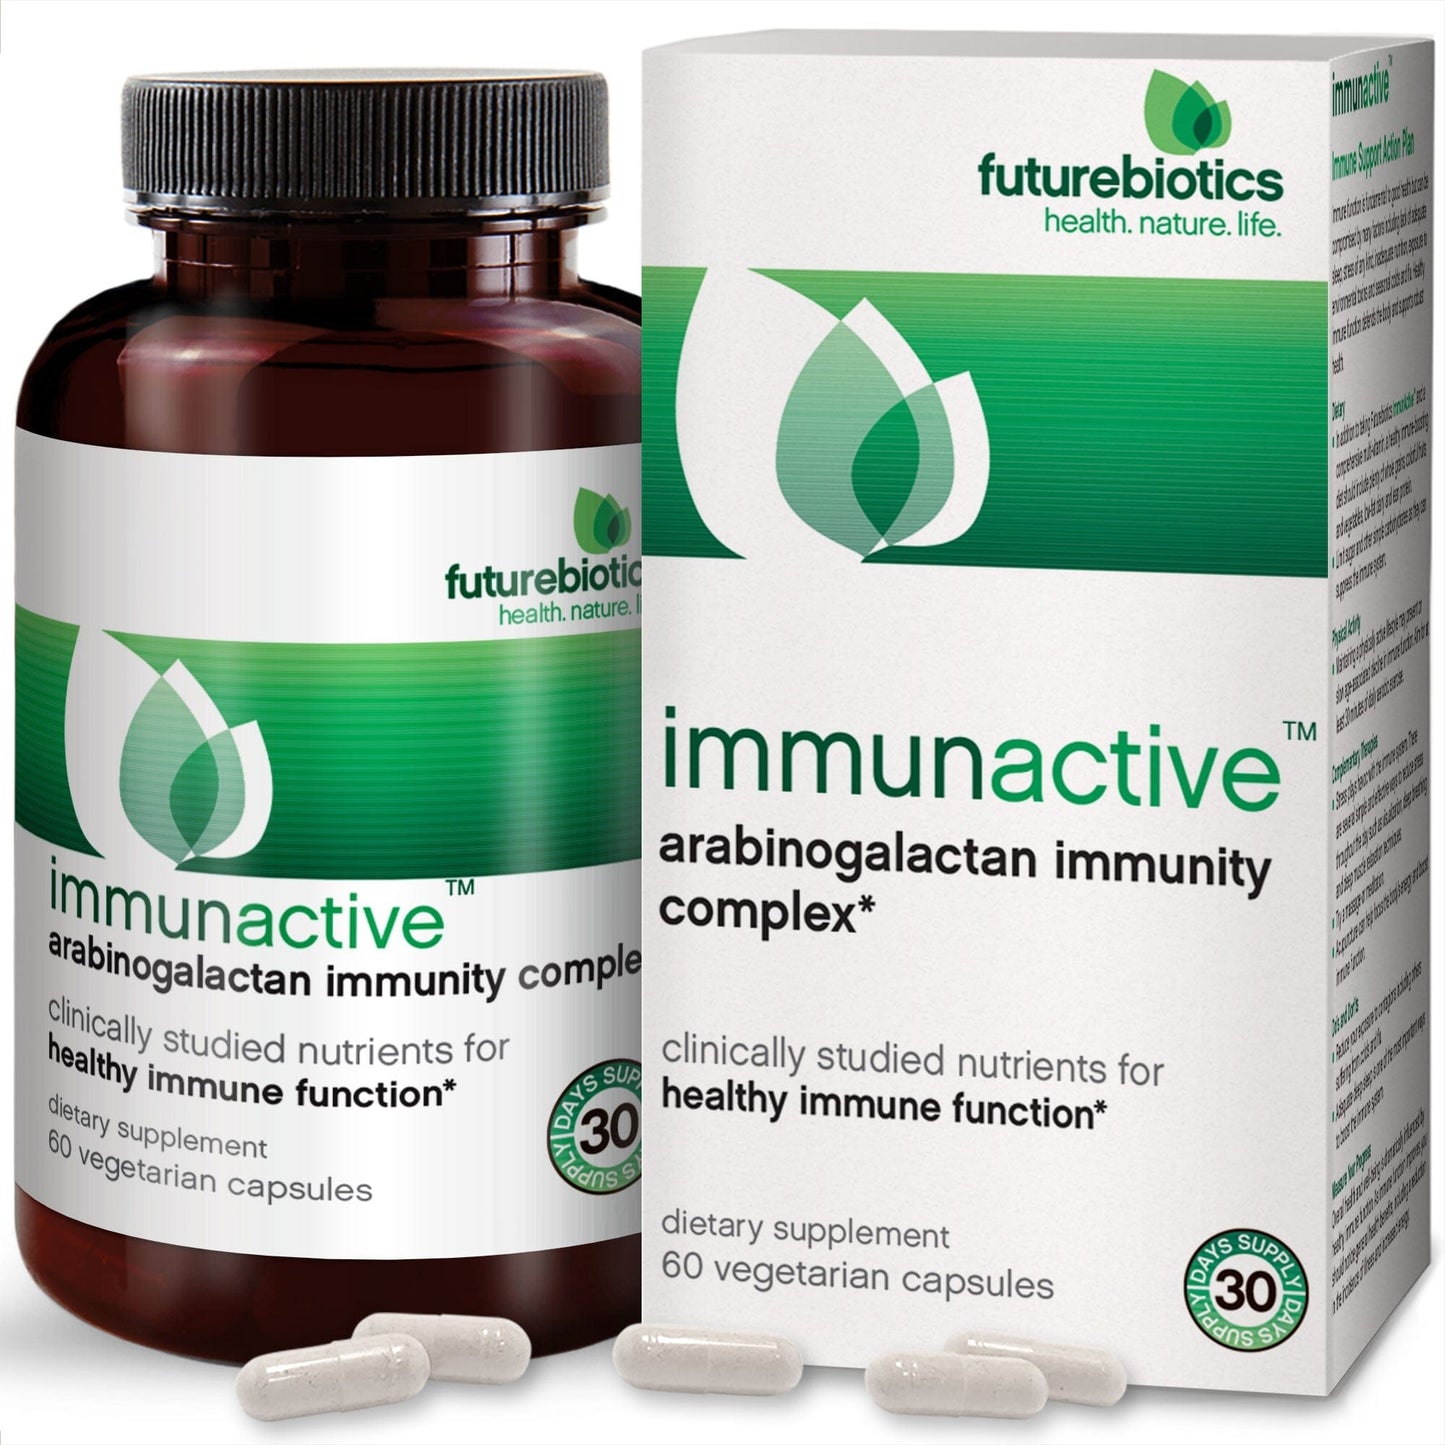 Futurebiotics ImmunActive Arabinogalactan Immunity Complex, 60 Capsules